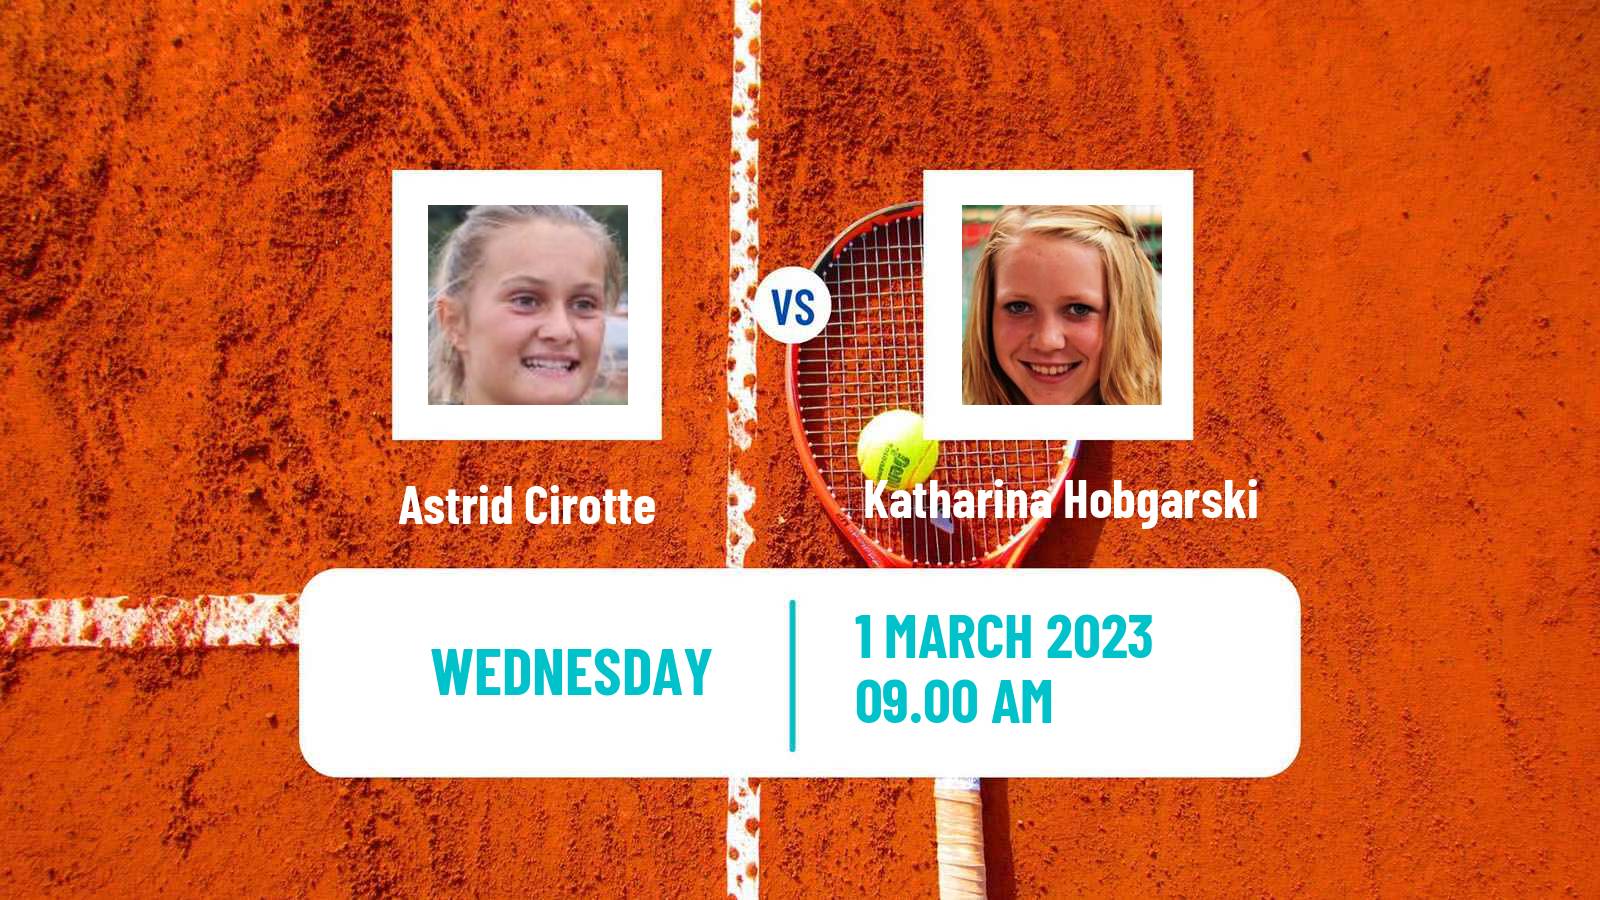 Tennis ITF Tournaments Astrid Cirotte - Katharina Hobgarski